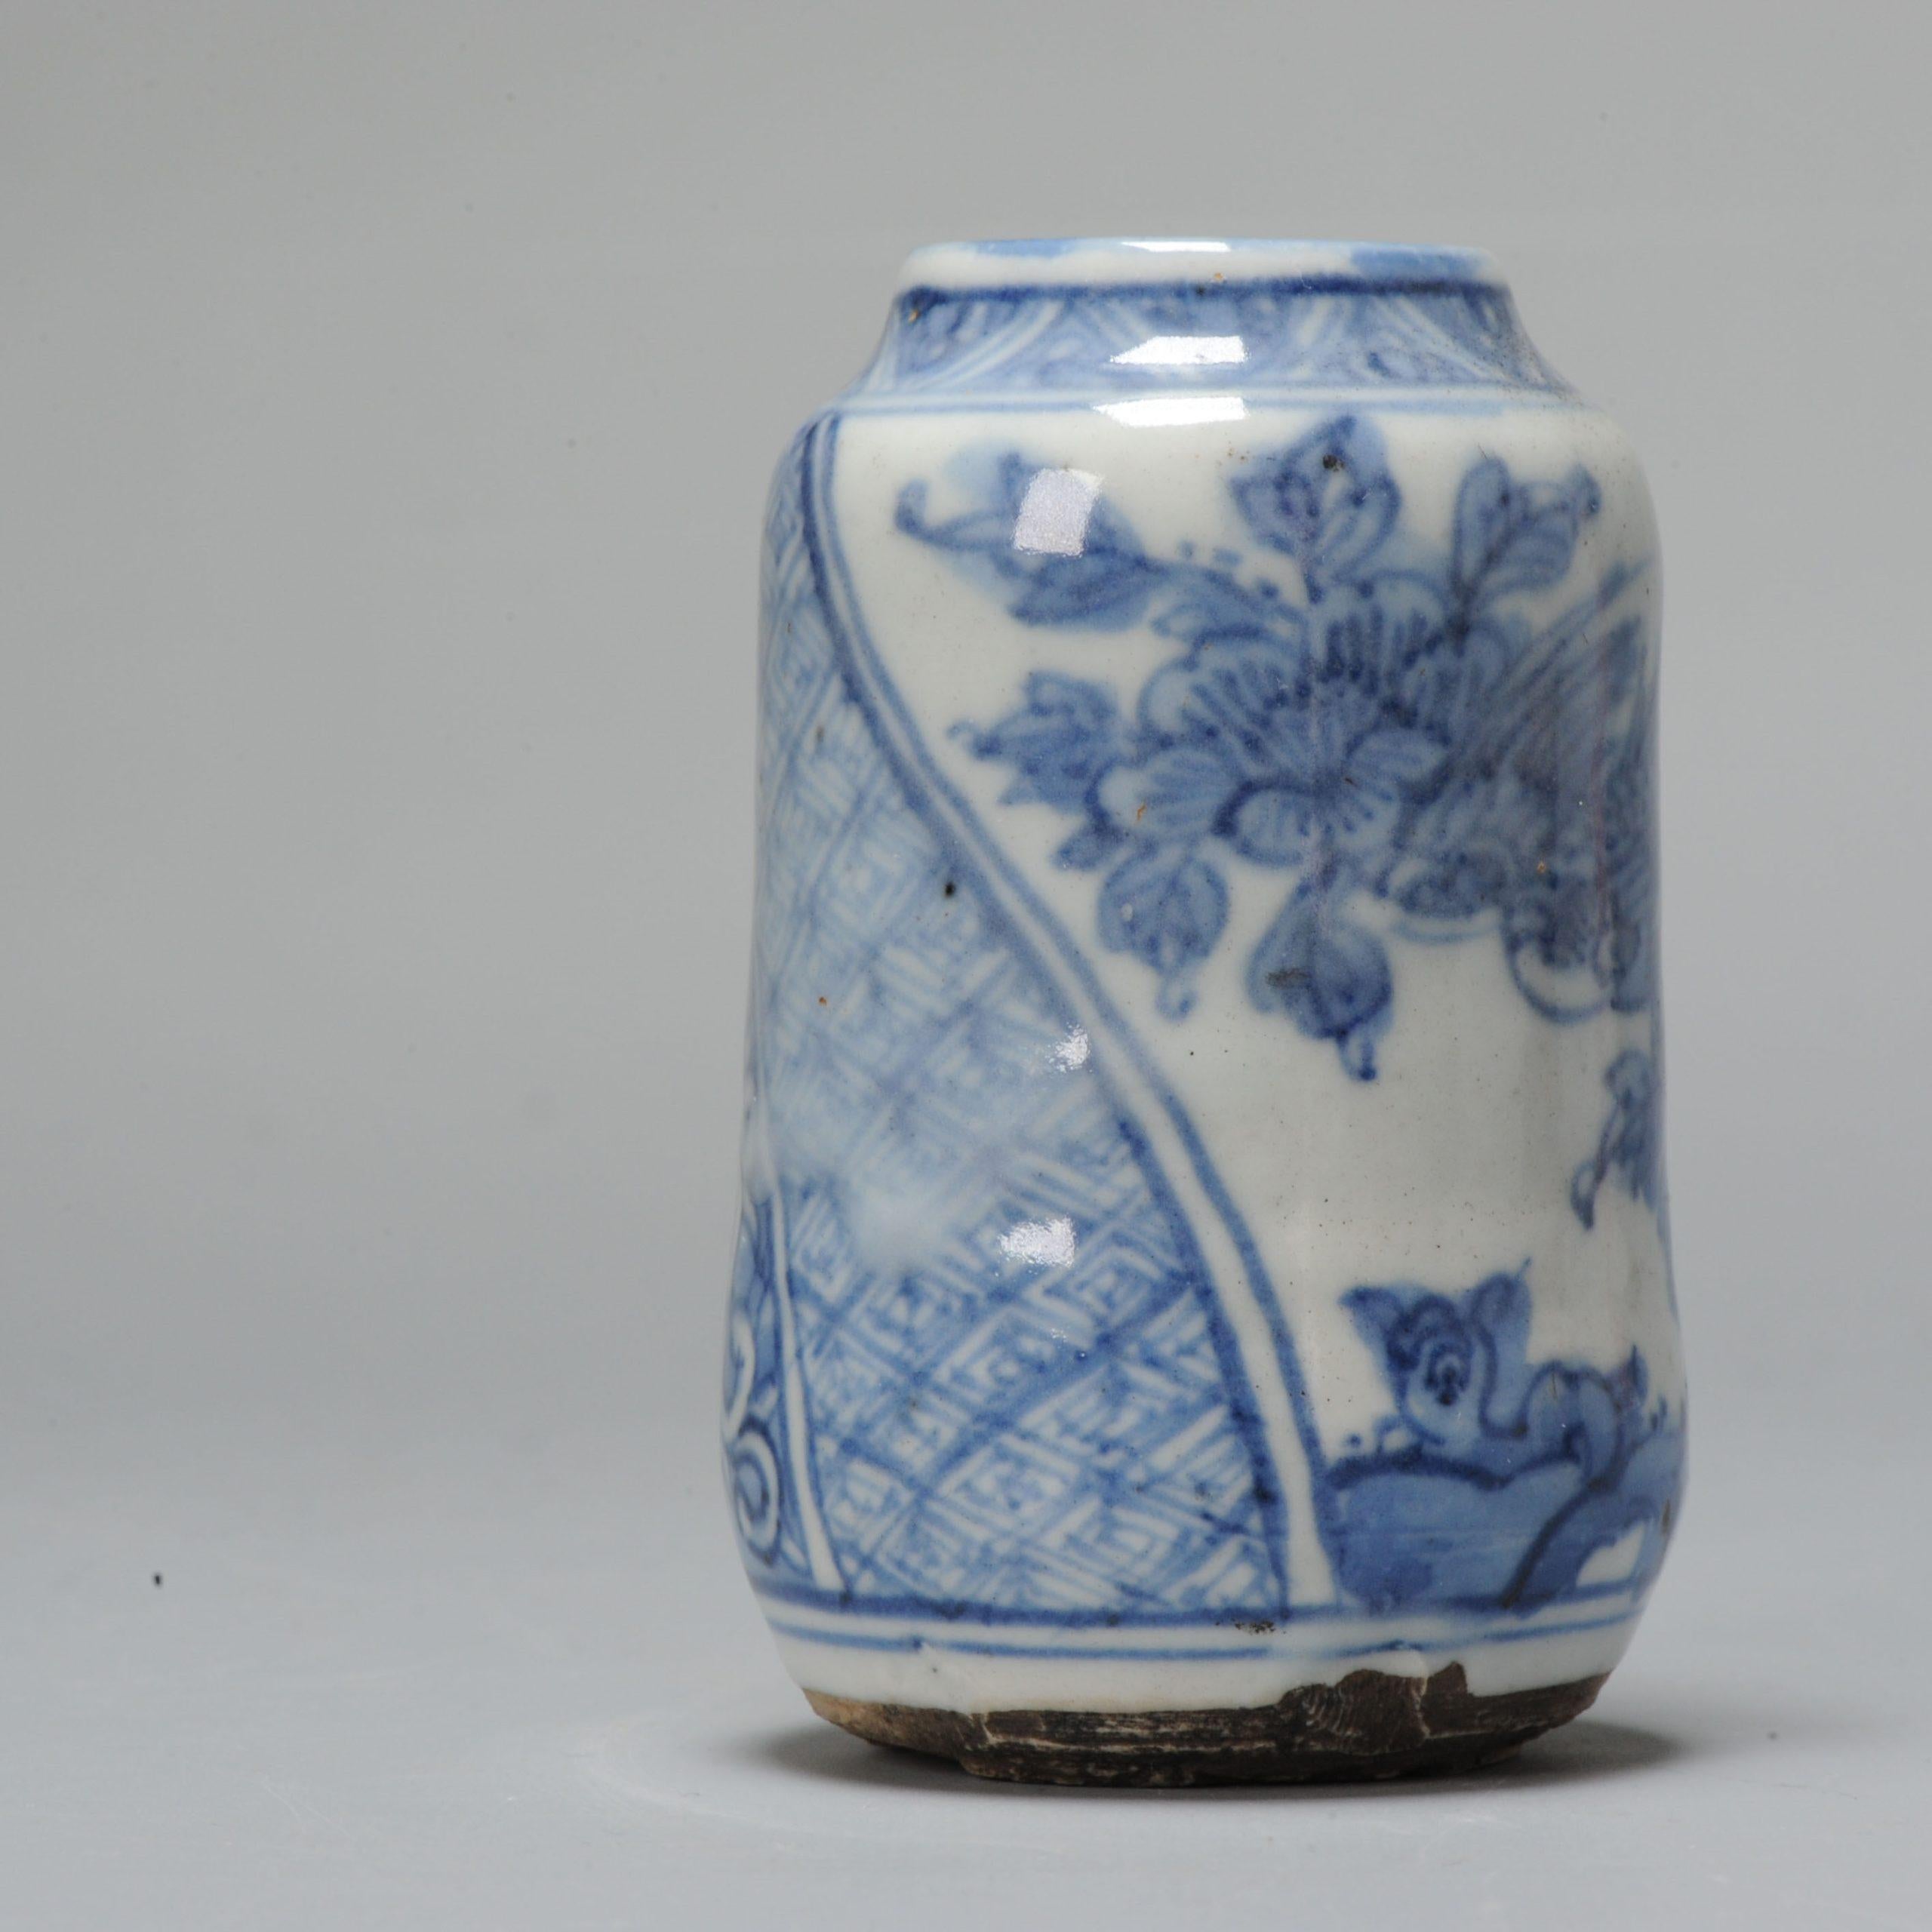 Wunderschönes kleines Weihrauch- oder Teeglas mit Deckel aus der Edo-Zeit. Sehr schön getopft und mit einer schönen laufenden Szene. Dekoriert mit im Shonzui-Stil.

Zusätzliche Informationen:
MATERIAL: Porzellan & Töpferei
Herkunftsregion: